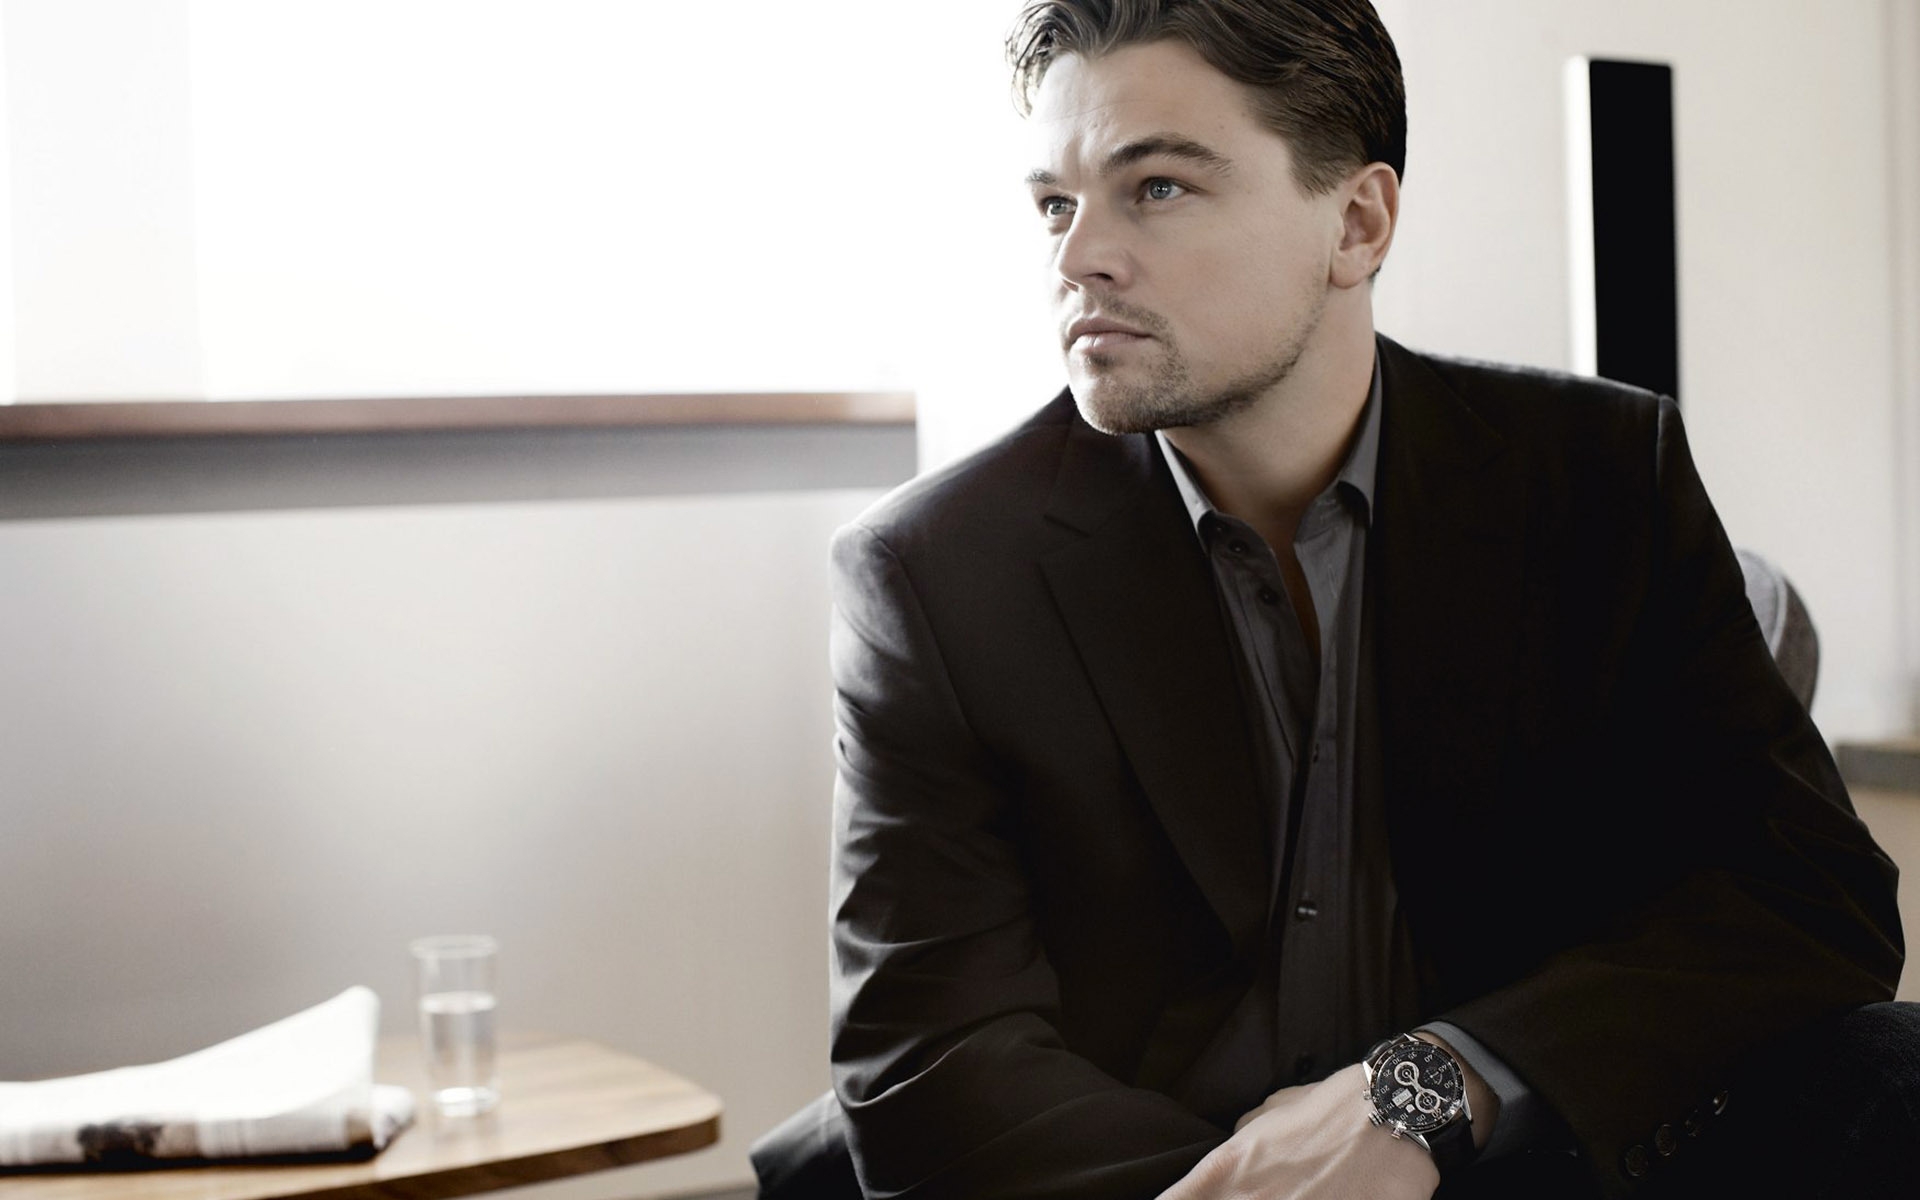 Leonardo DiCaprio in Black for 1920 x 1200 widescreen resolution